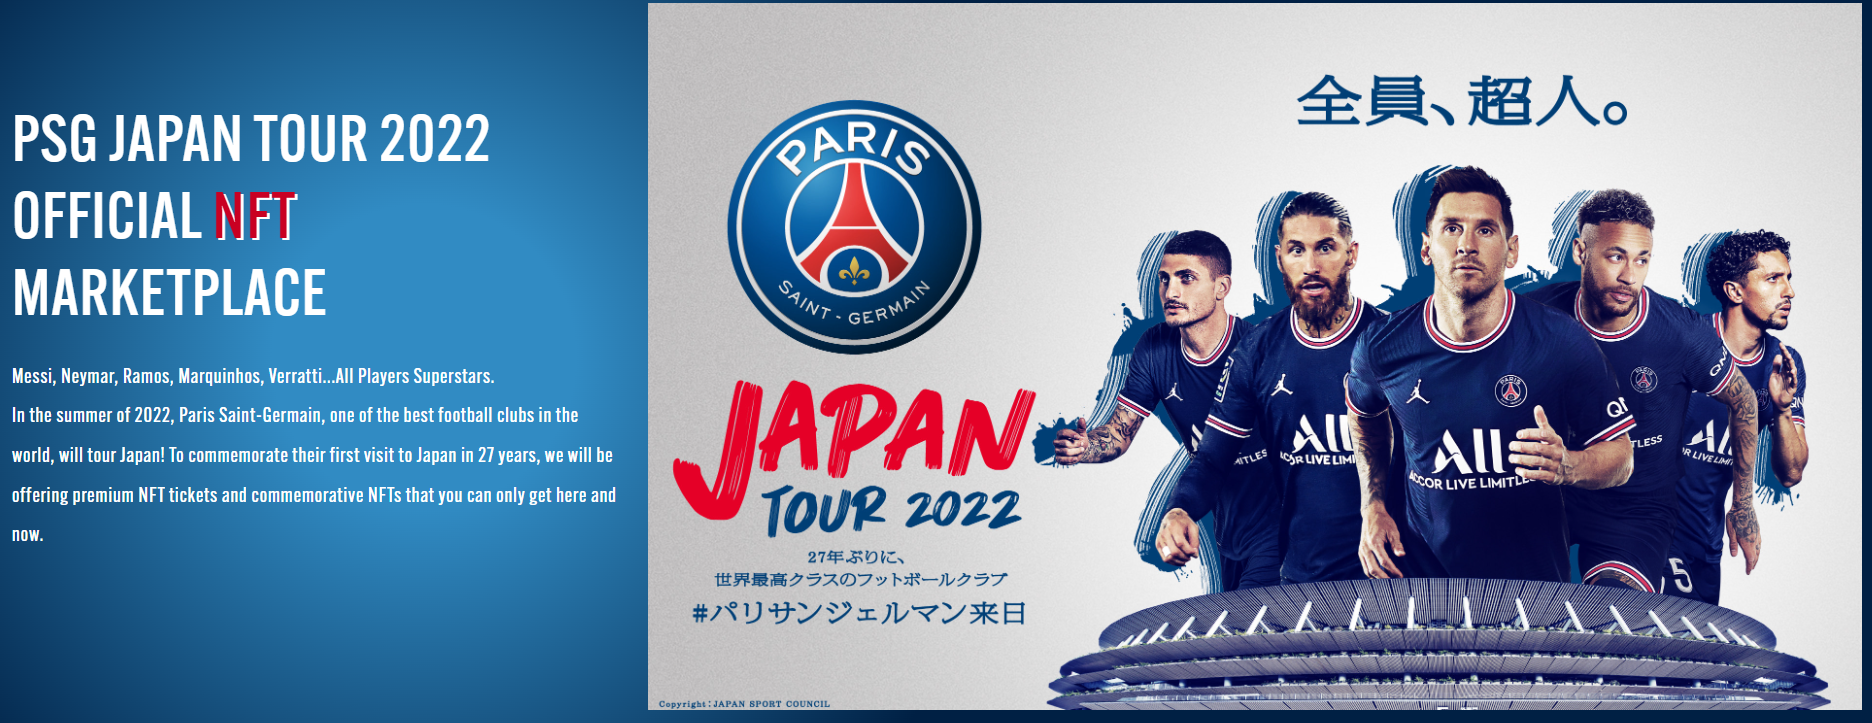 巴黎圣日耳曼足球俱乐部为其首次日本之行推出 NFT 门票及收藏品